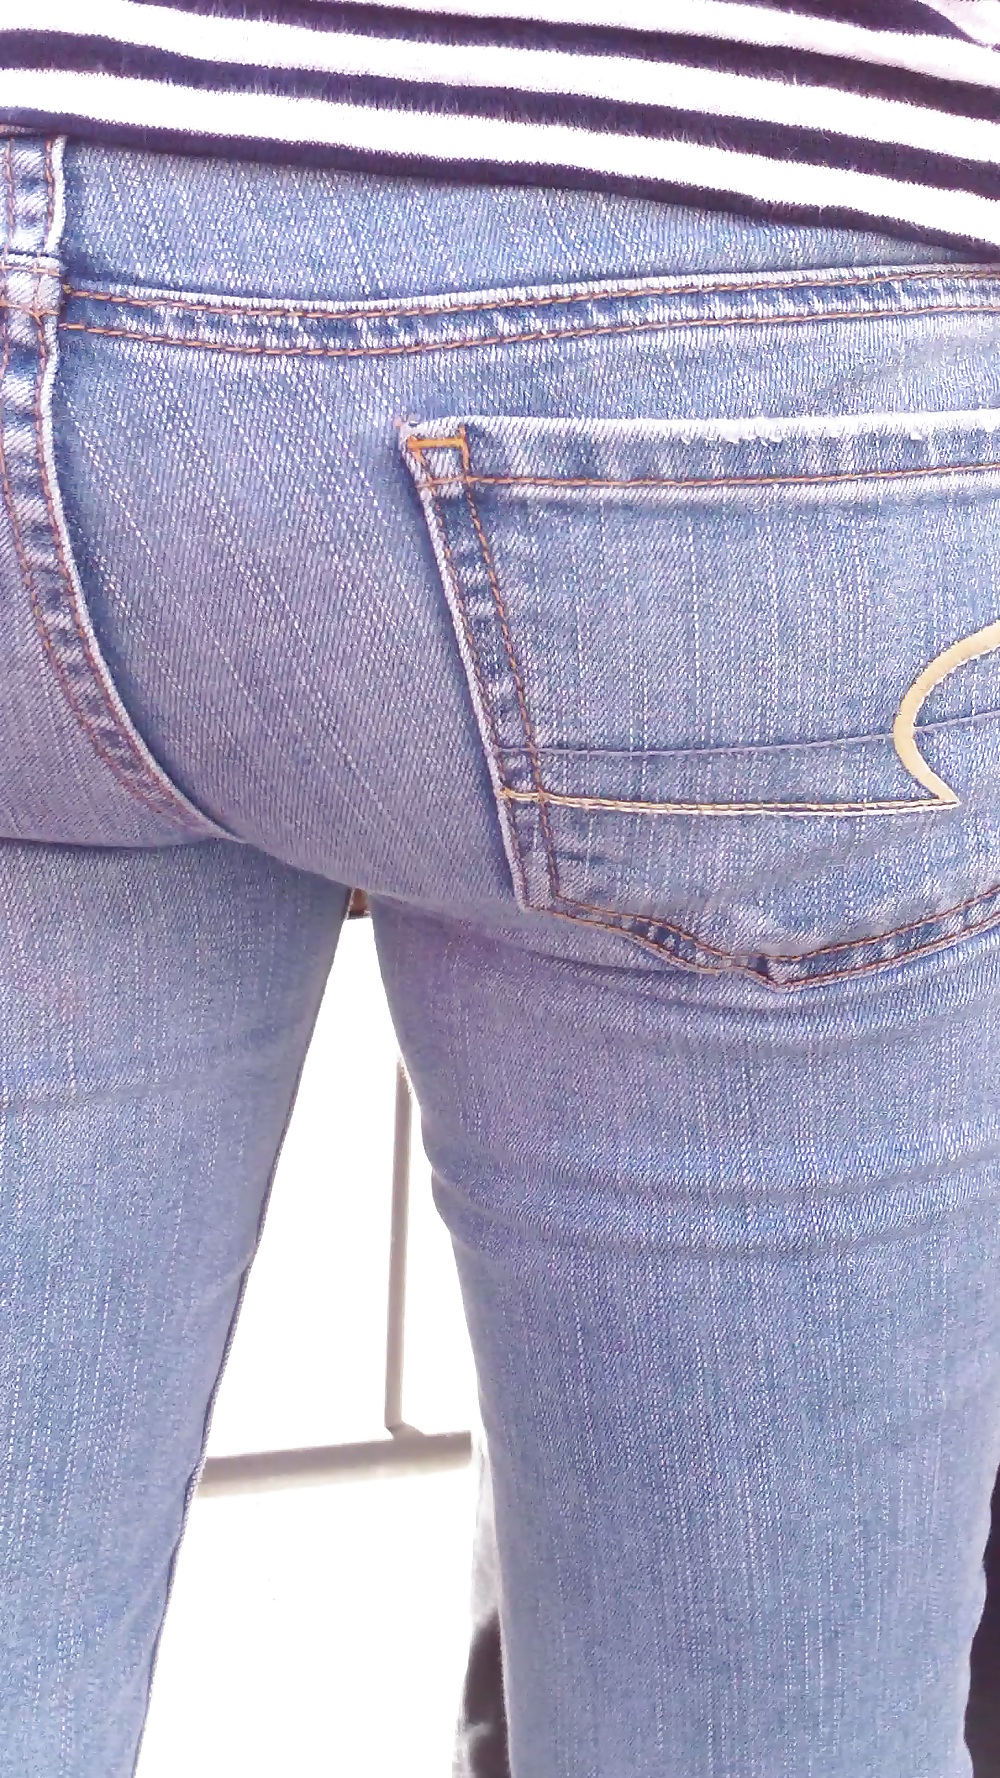 Teen ass & close up butt in jeans #19968856